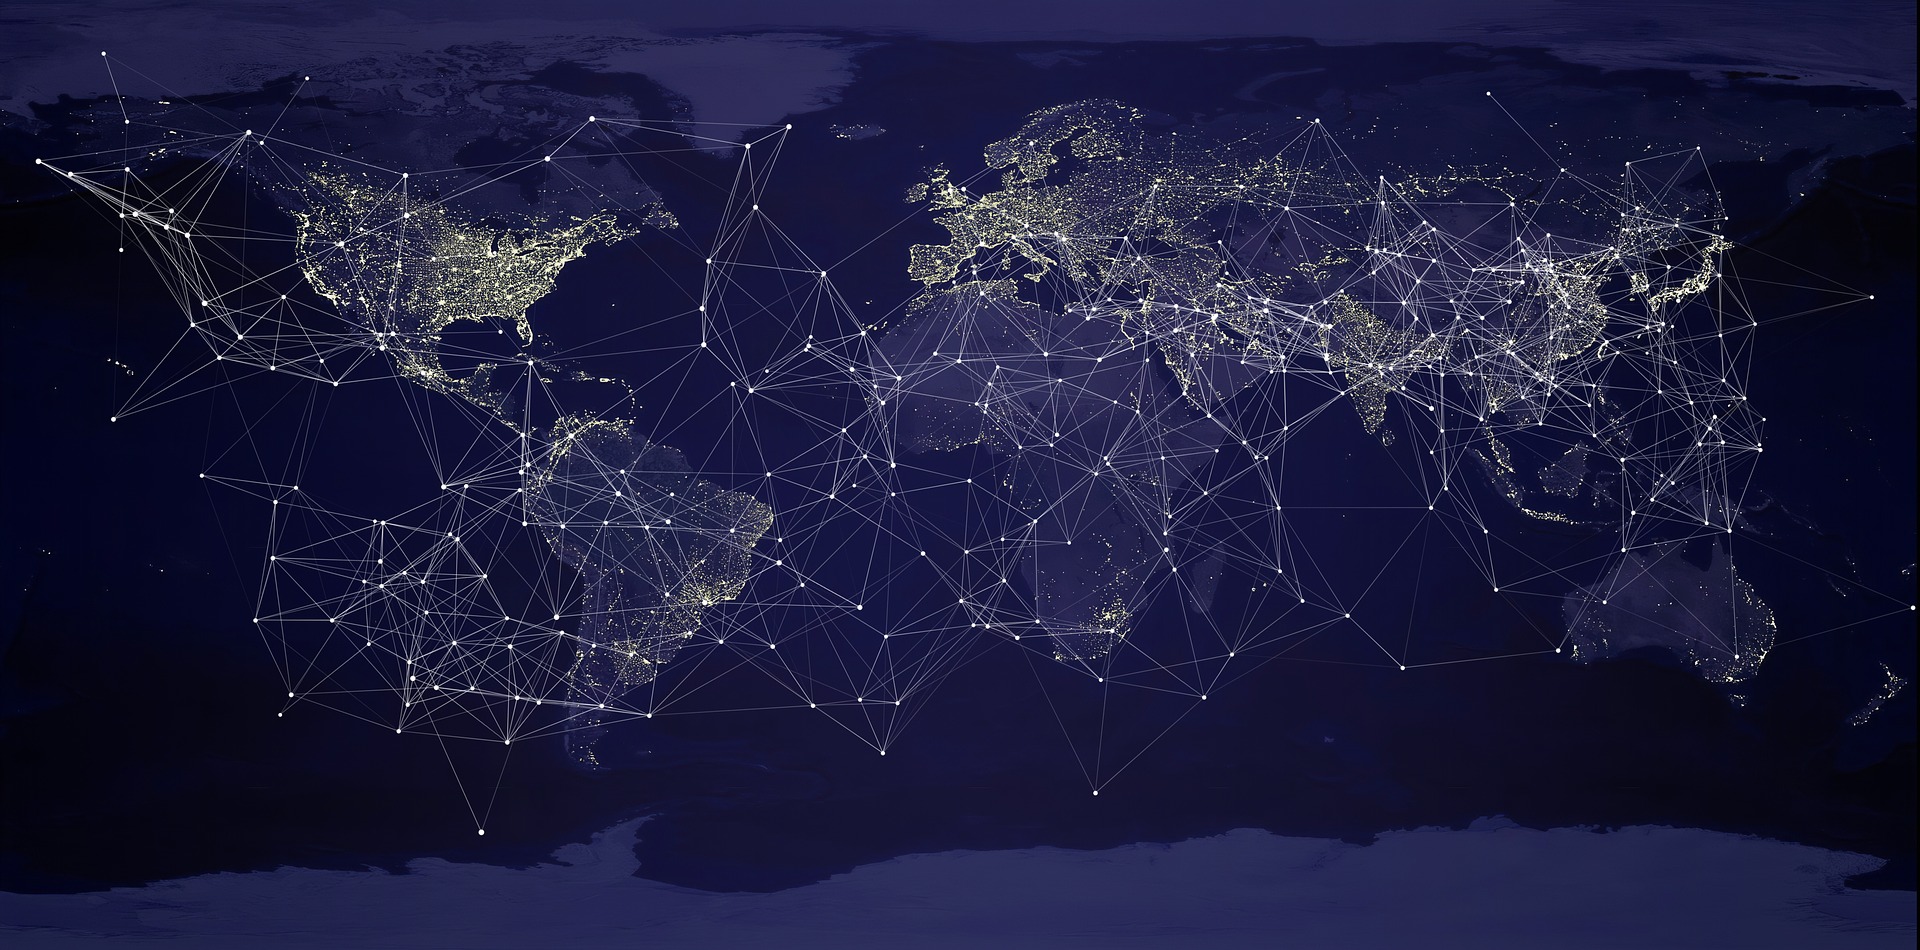 Global network